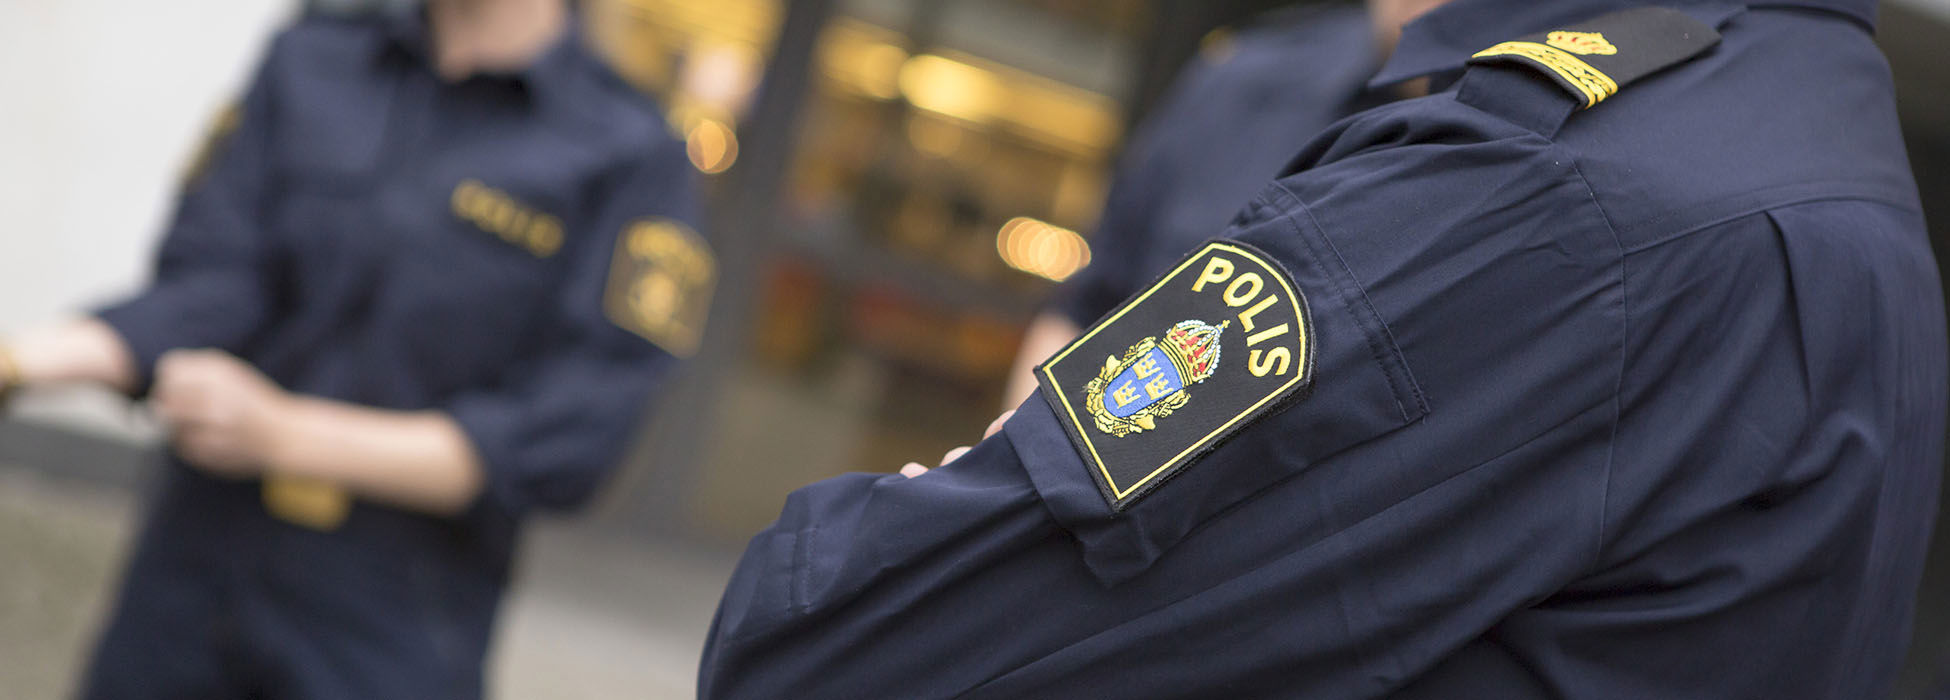 Polisiära studier - Högskolan i Borås